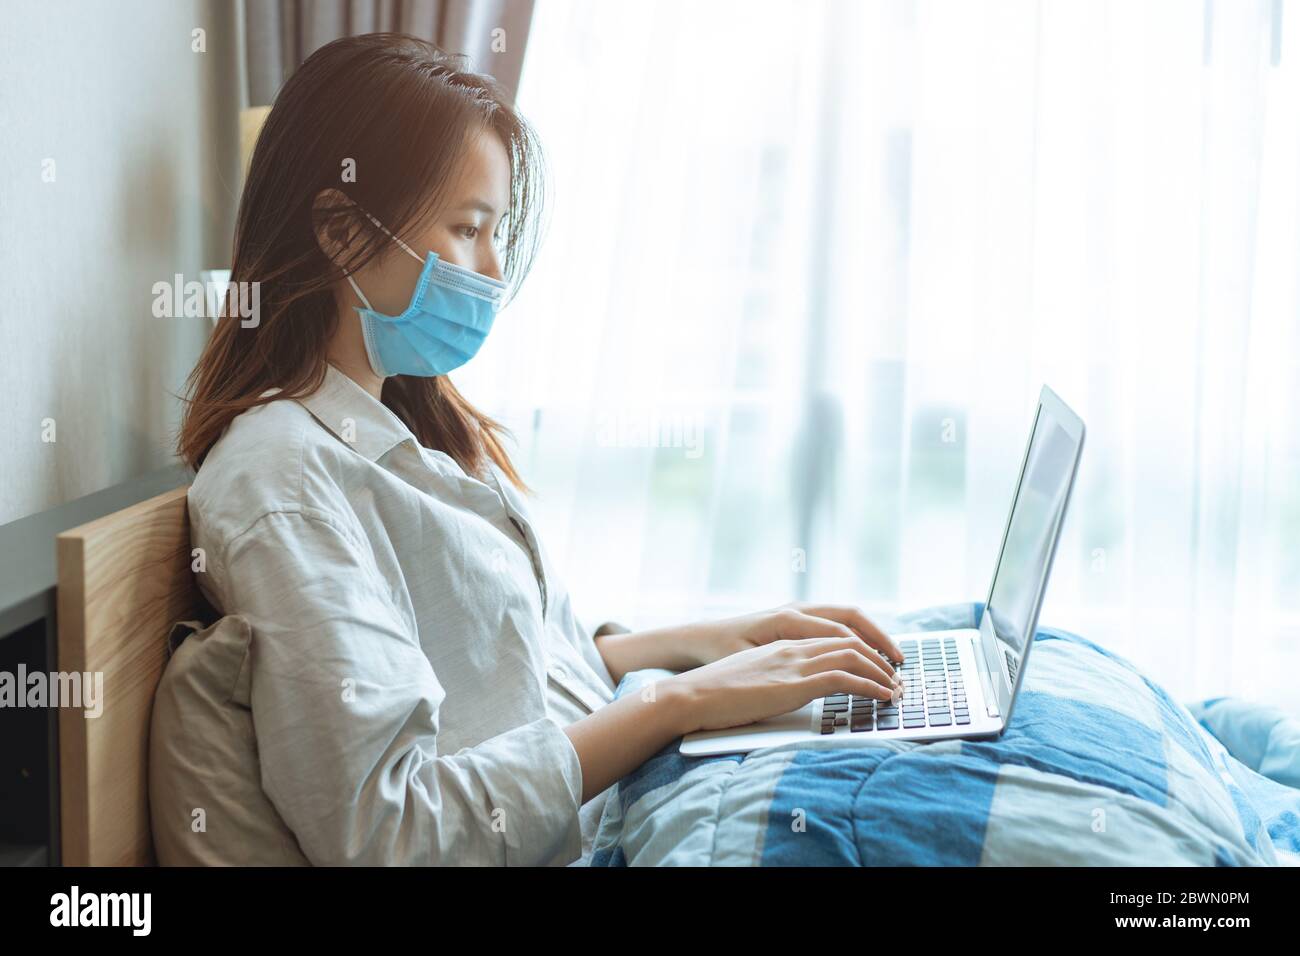 Persone Asian ragazza teen Coronavirus influenza infettato lavorando a casa da computer portatile online indossare maschera di protezione per la disposizione viso prevenire Covid-19 spalmare Foto Stock